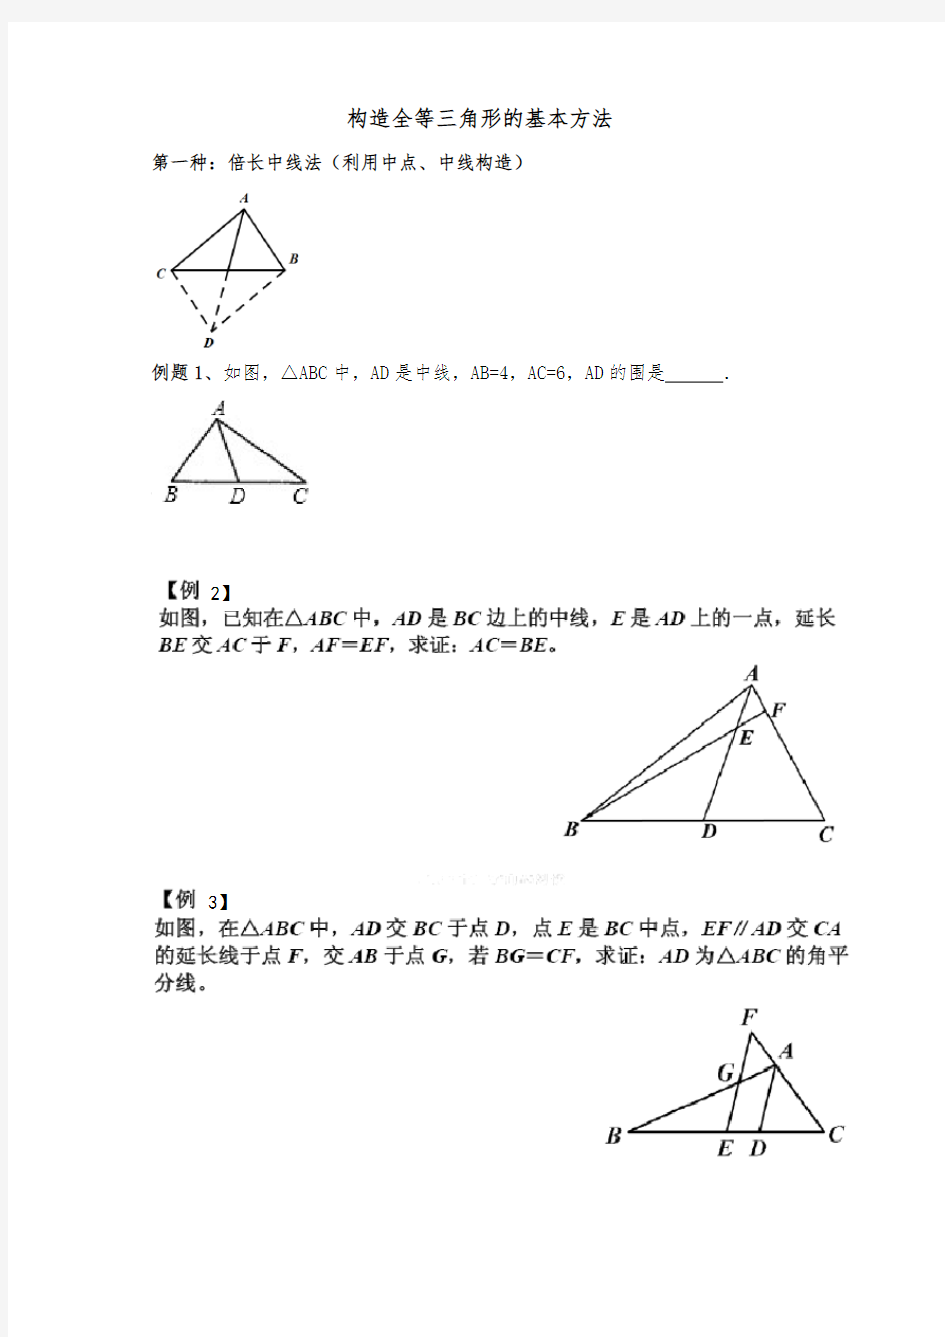 构造全等三角形的基本方法